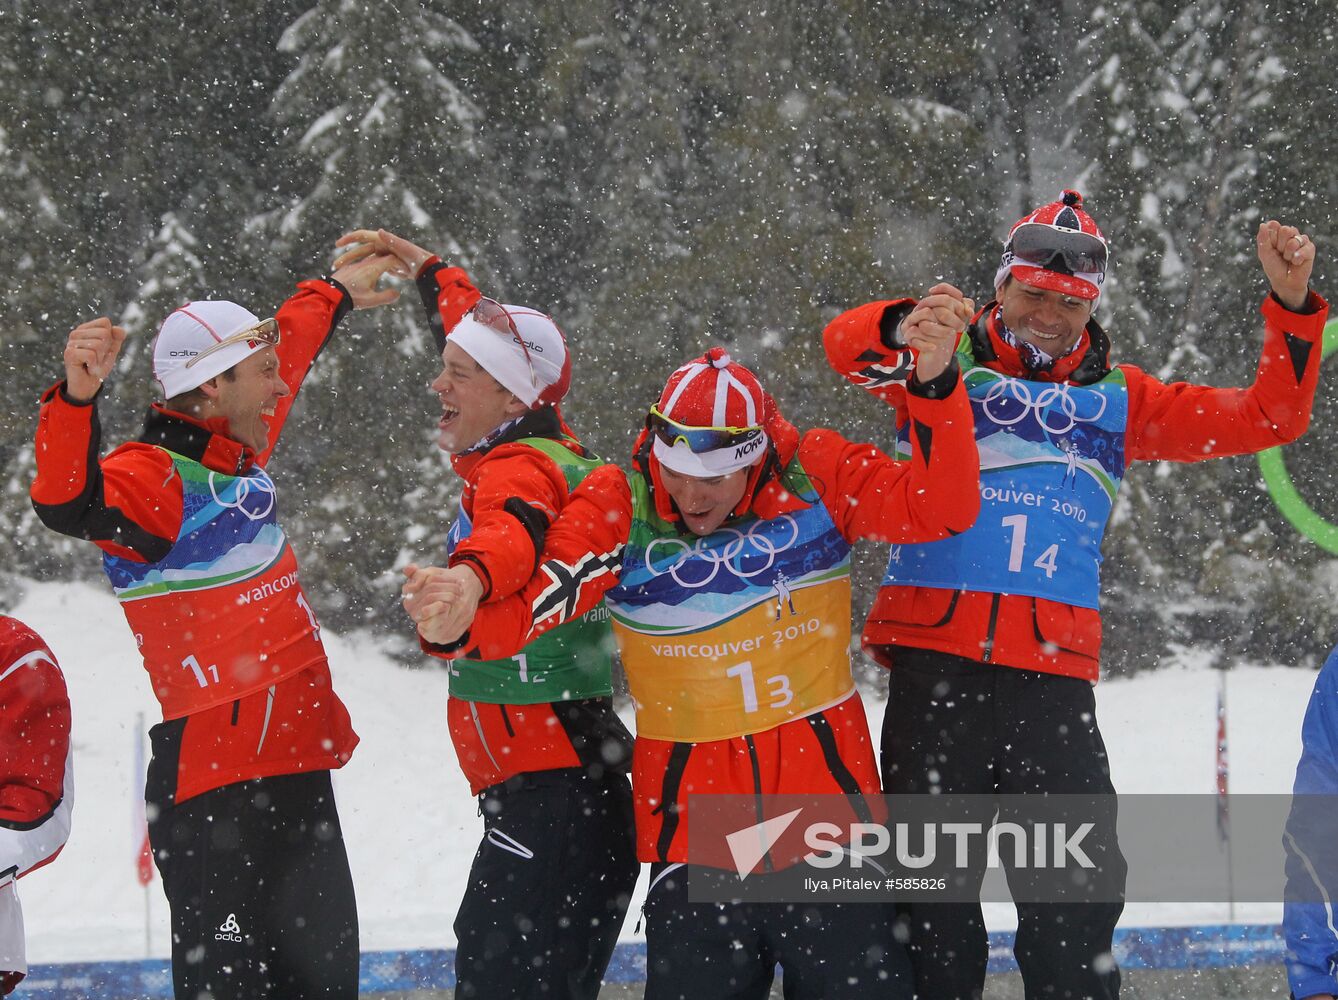 Norwegian biathletes win gold in men's relay